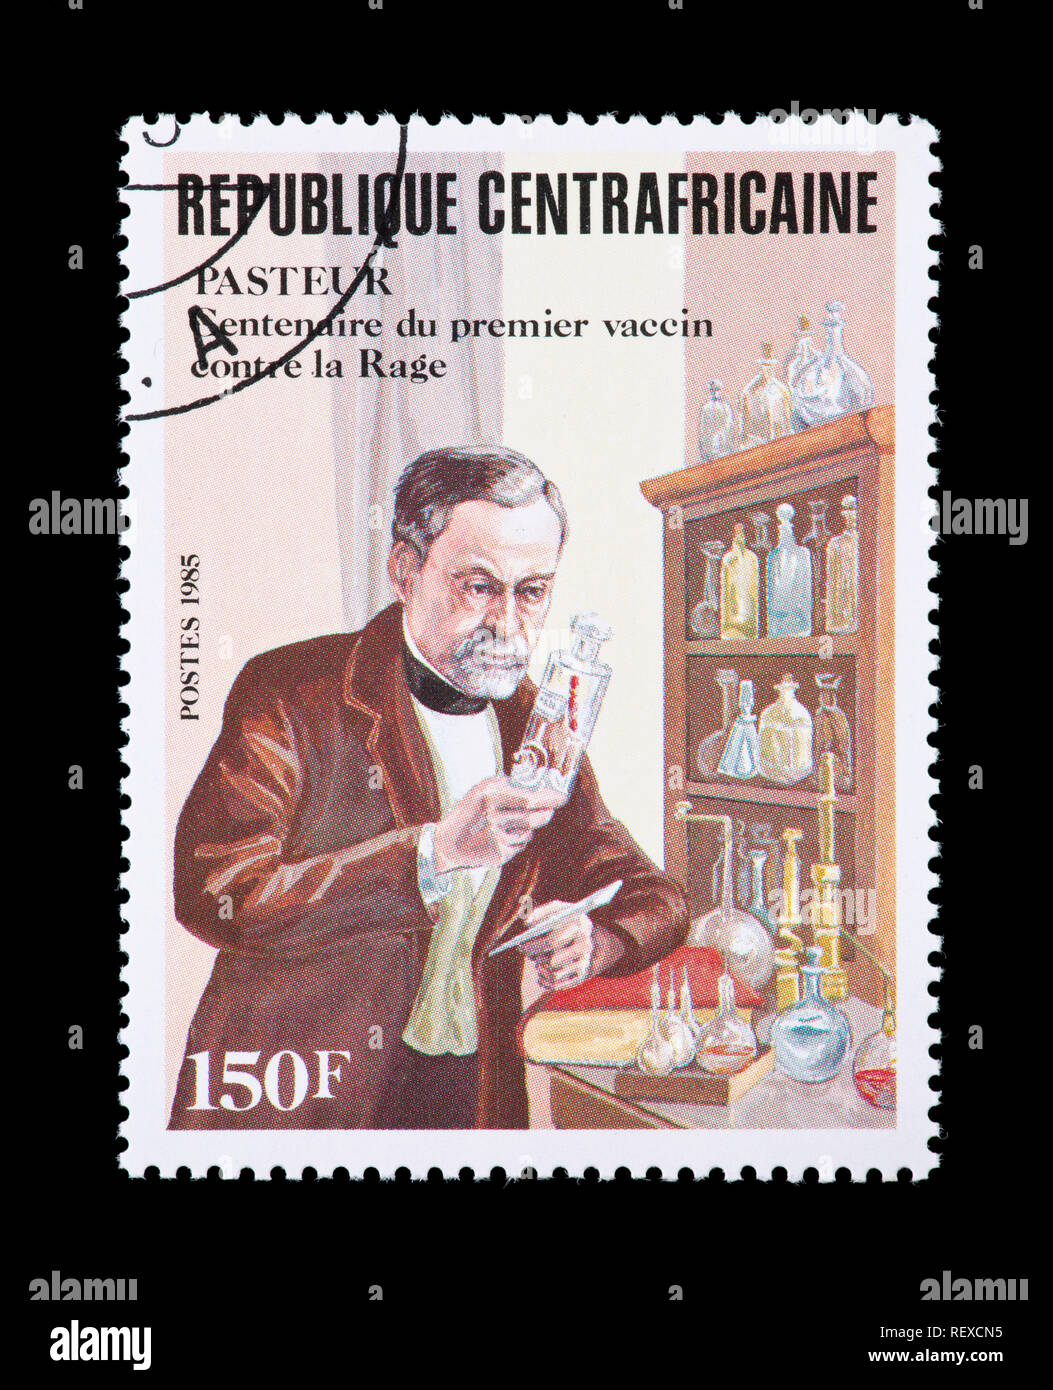 Sello de la República Centroafricana representando Louis Pasteur, y el descubrimiento de la vacuna antirrábica (Centenario). Foto de stock